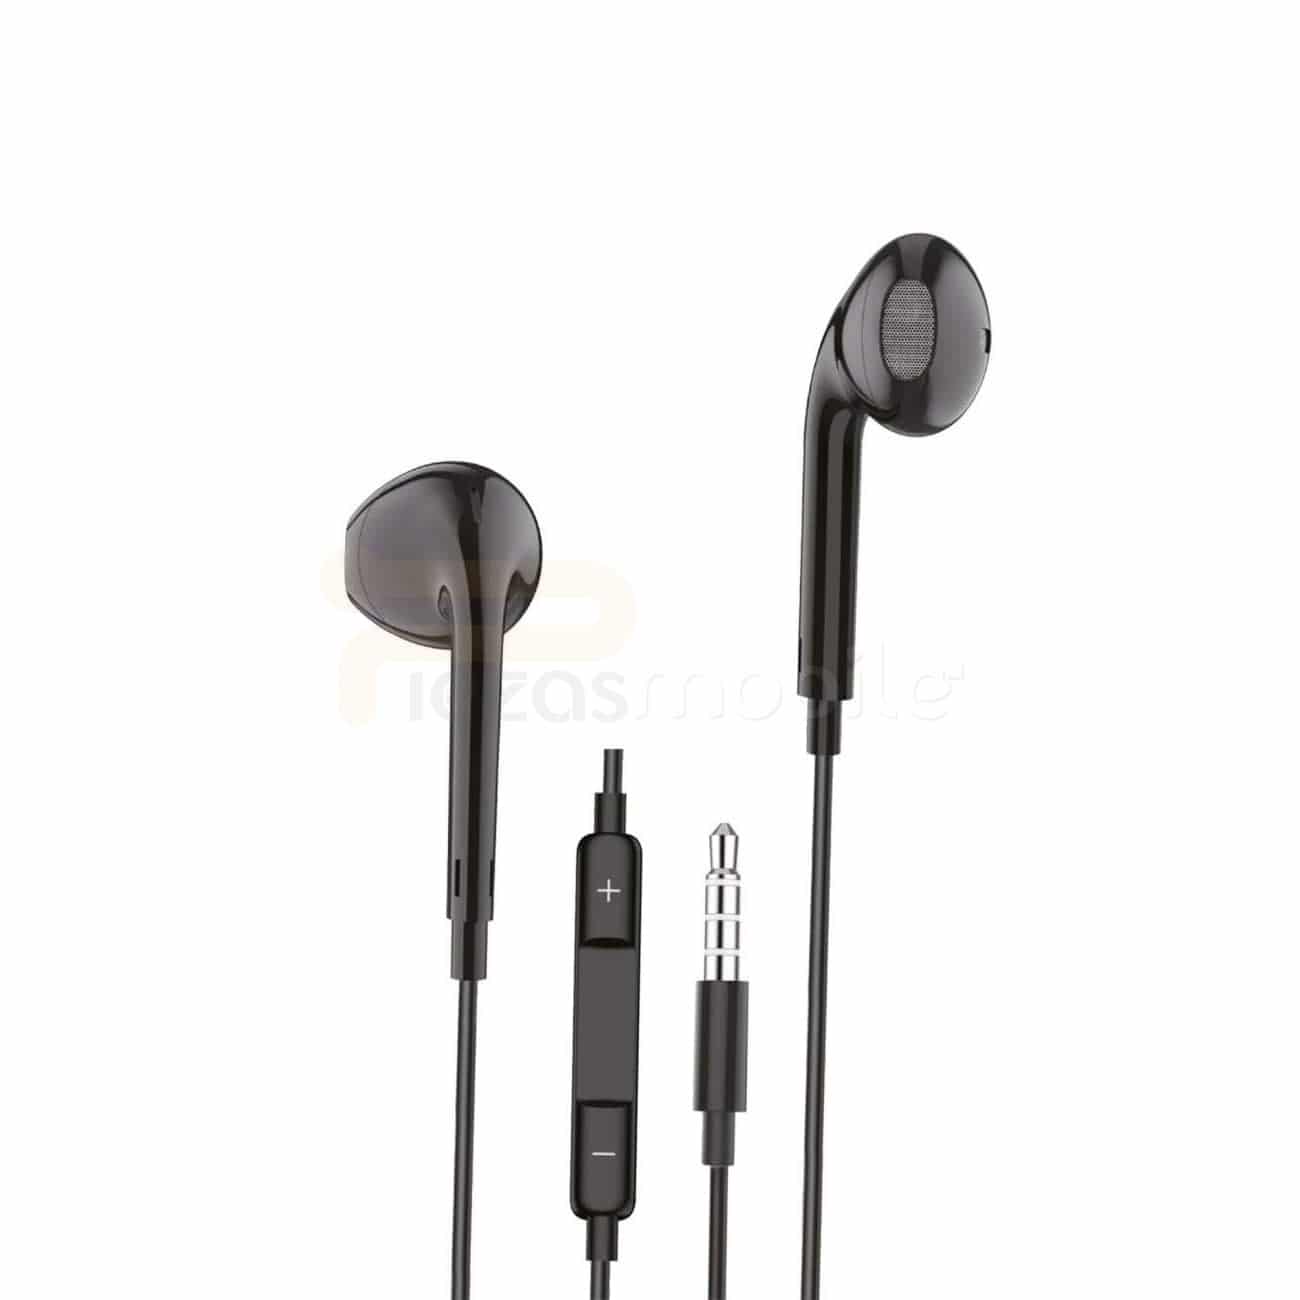 Describir mayor Amplificar Auriculares Estéreo, Conector Jack 3.5mm / iOS y Android - Piezas Mobile